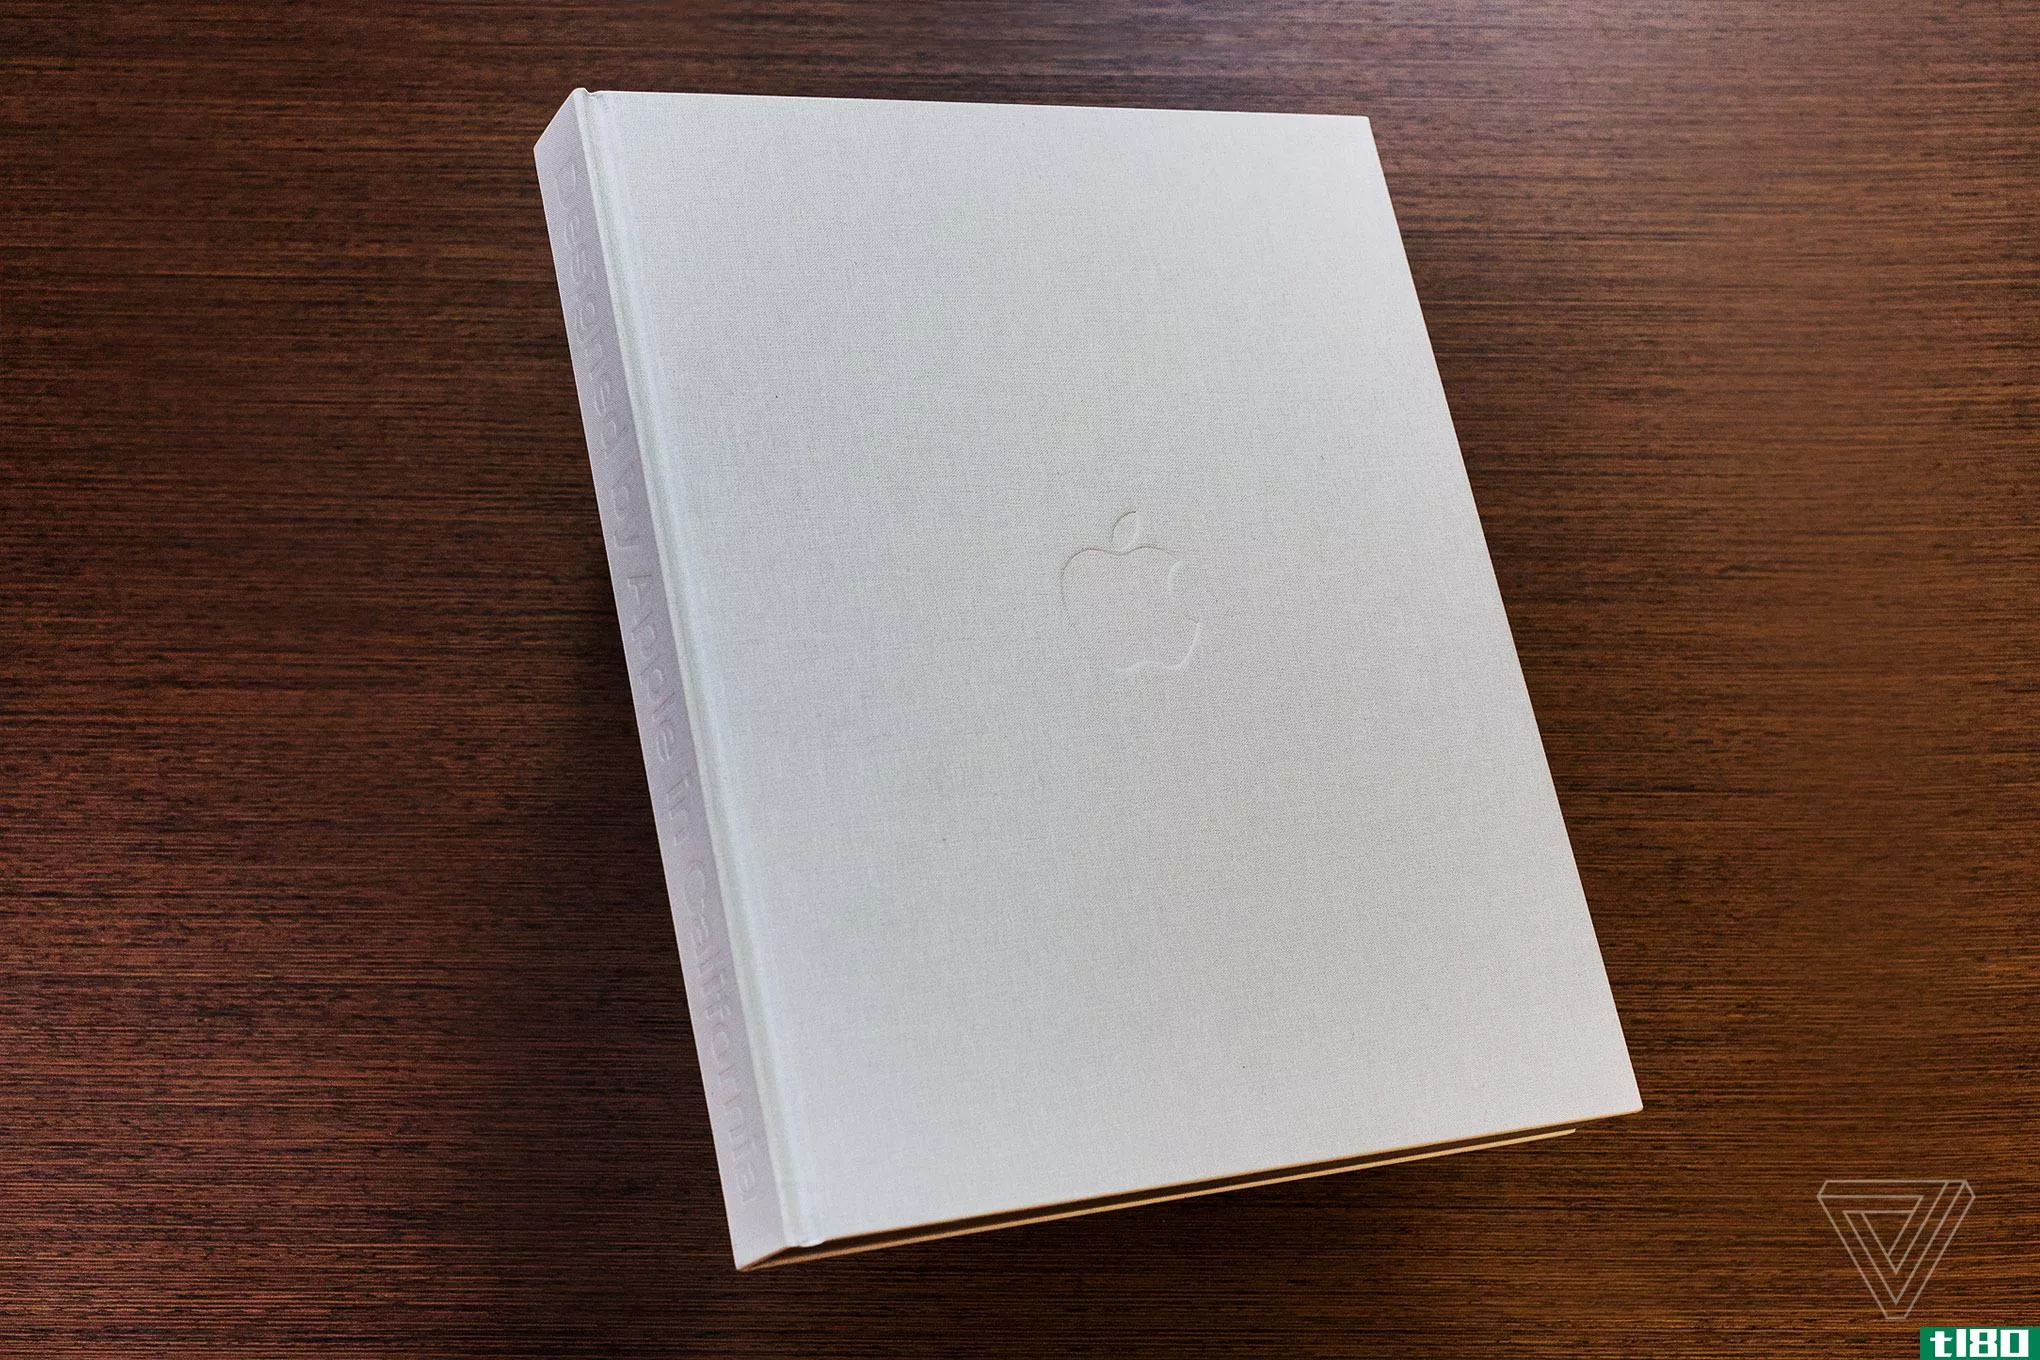 苹果售价299美元的咖啡桌书对怀旧的粉丝来说是一本神圣的书